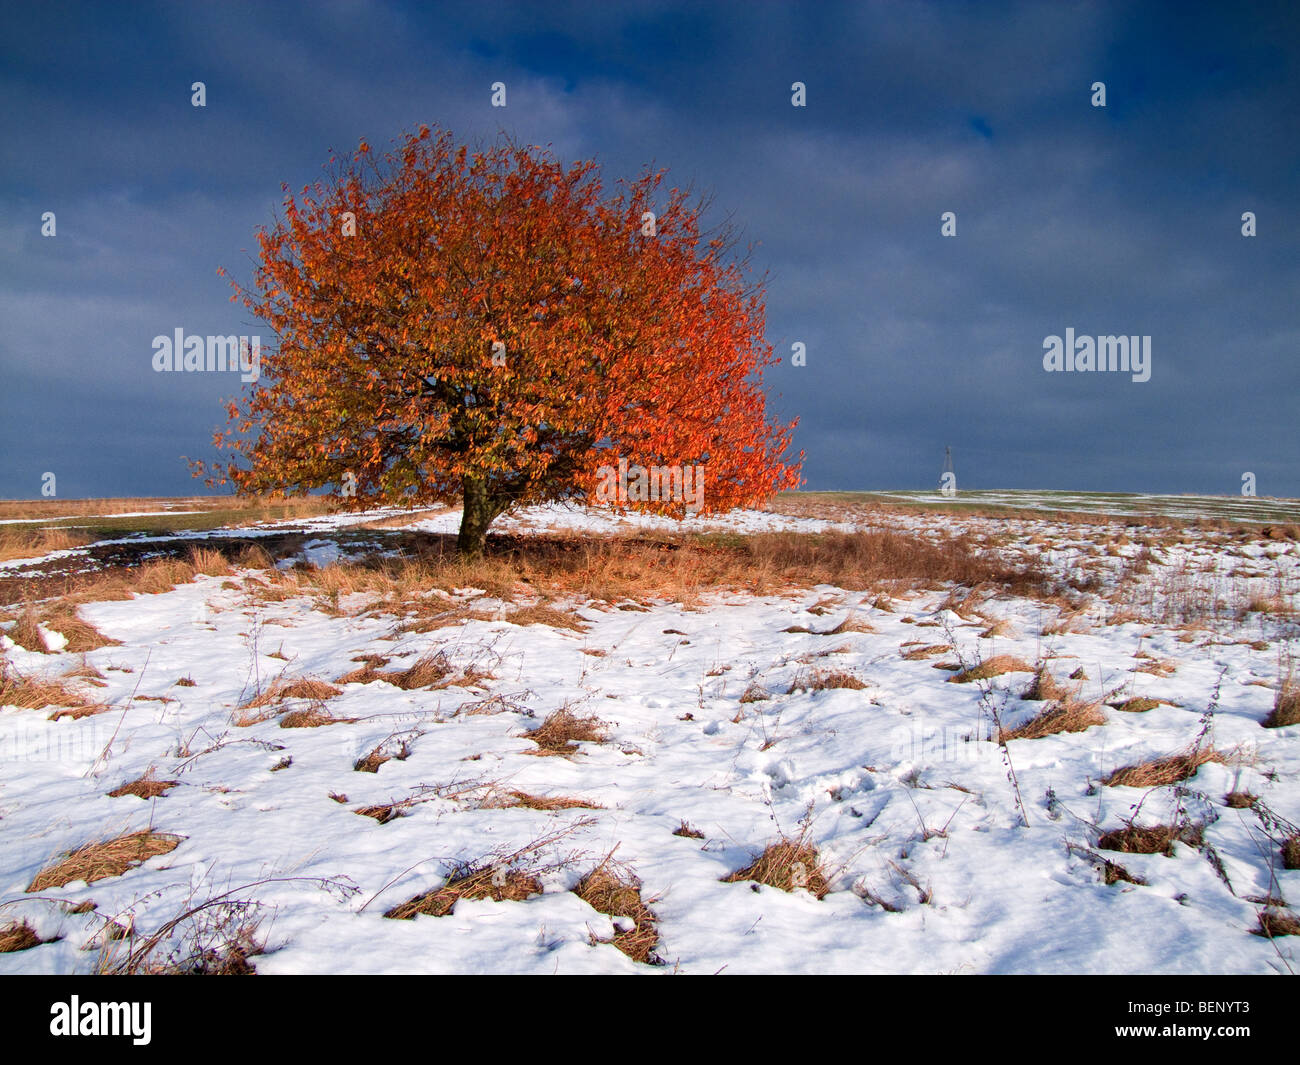 Autumn tree in winter Stock Photo